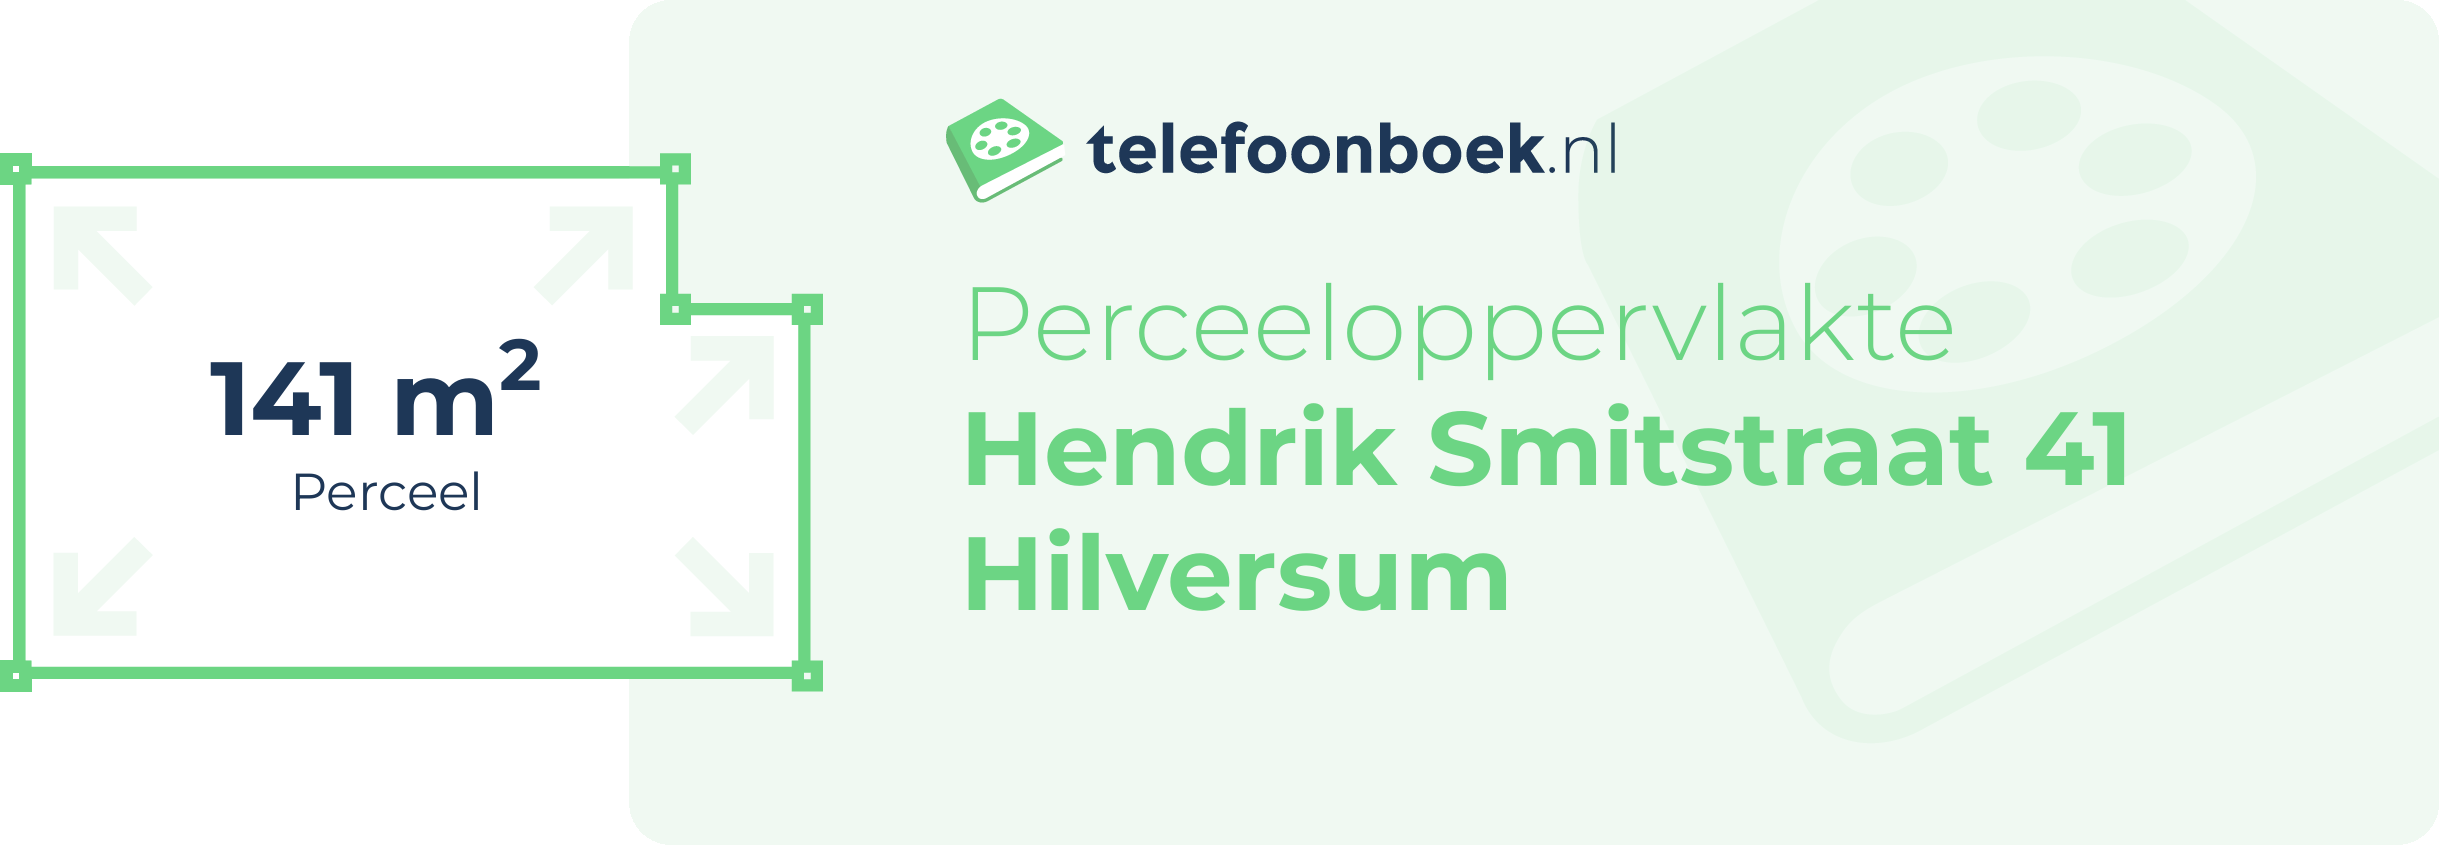 Perceeloppervlakte Hendrik Smitstraat 41 Hilversum